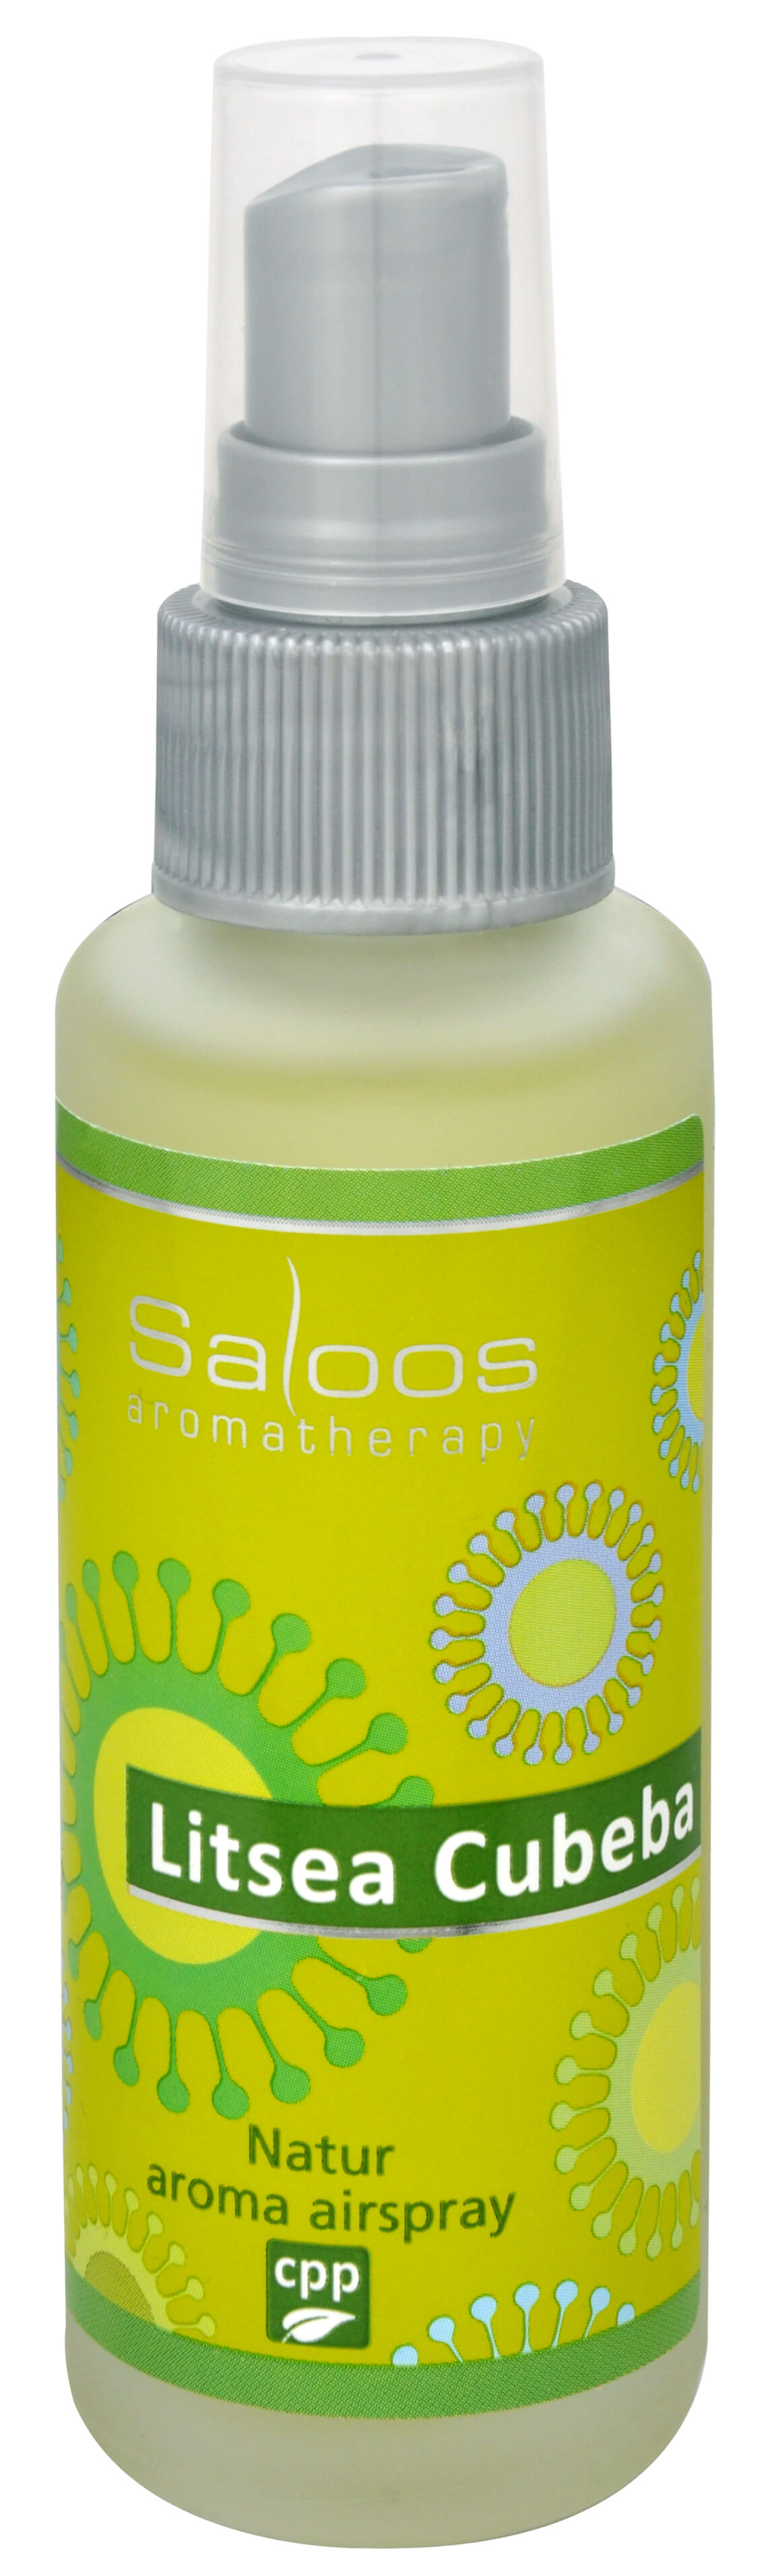 Zobrazit detail výrobku Saloos Natur aroma airspray - Litsea cubeba (přírodní osvěžovač vzduchu) 50 ml + 2 měsíce na vrácení zboží